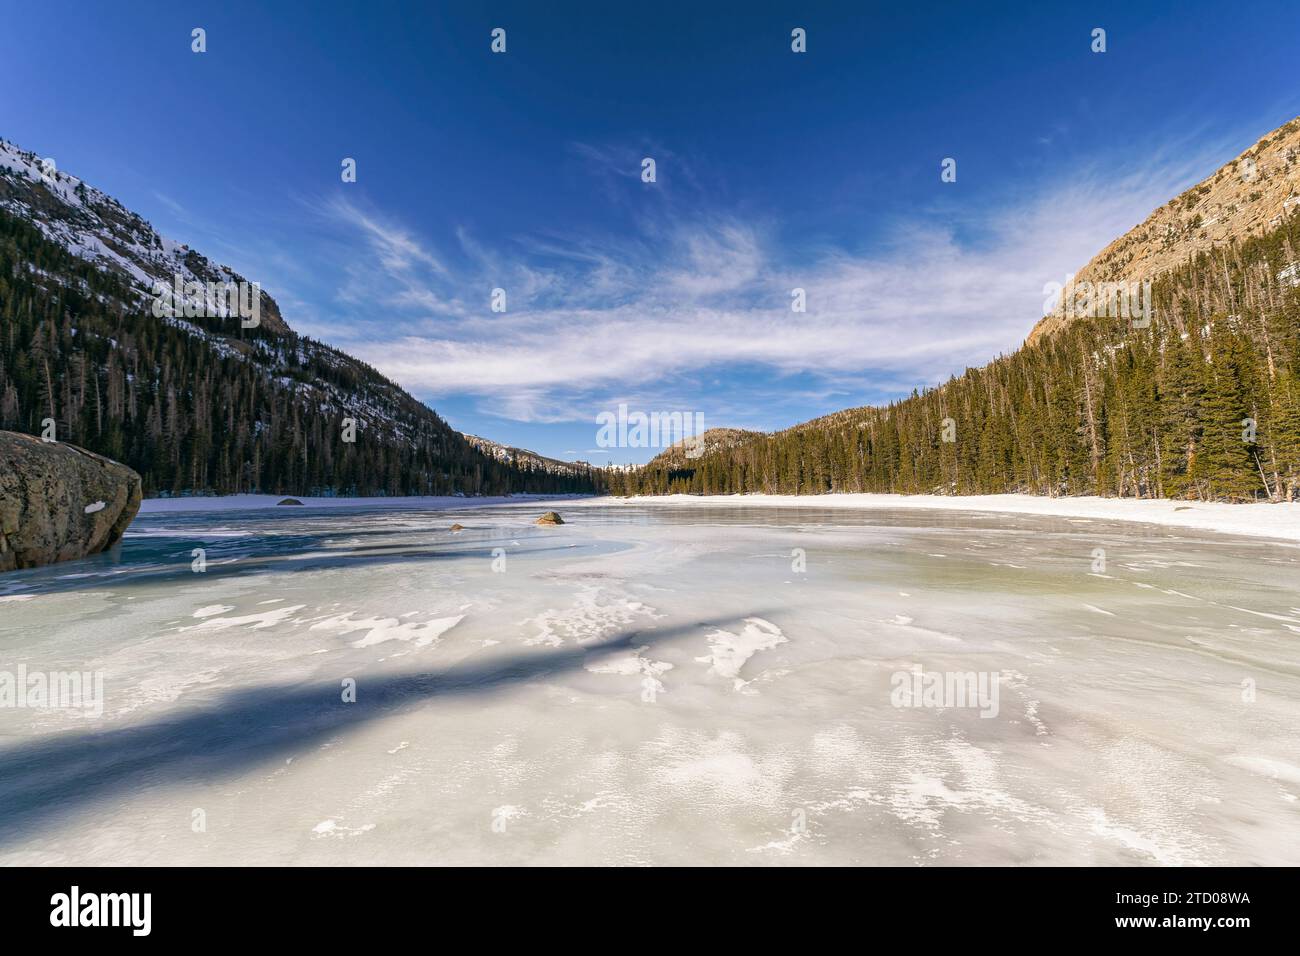 Lac gelé dans le parc national des montagnes Rocheuses, Colorado Banque D'Images